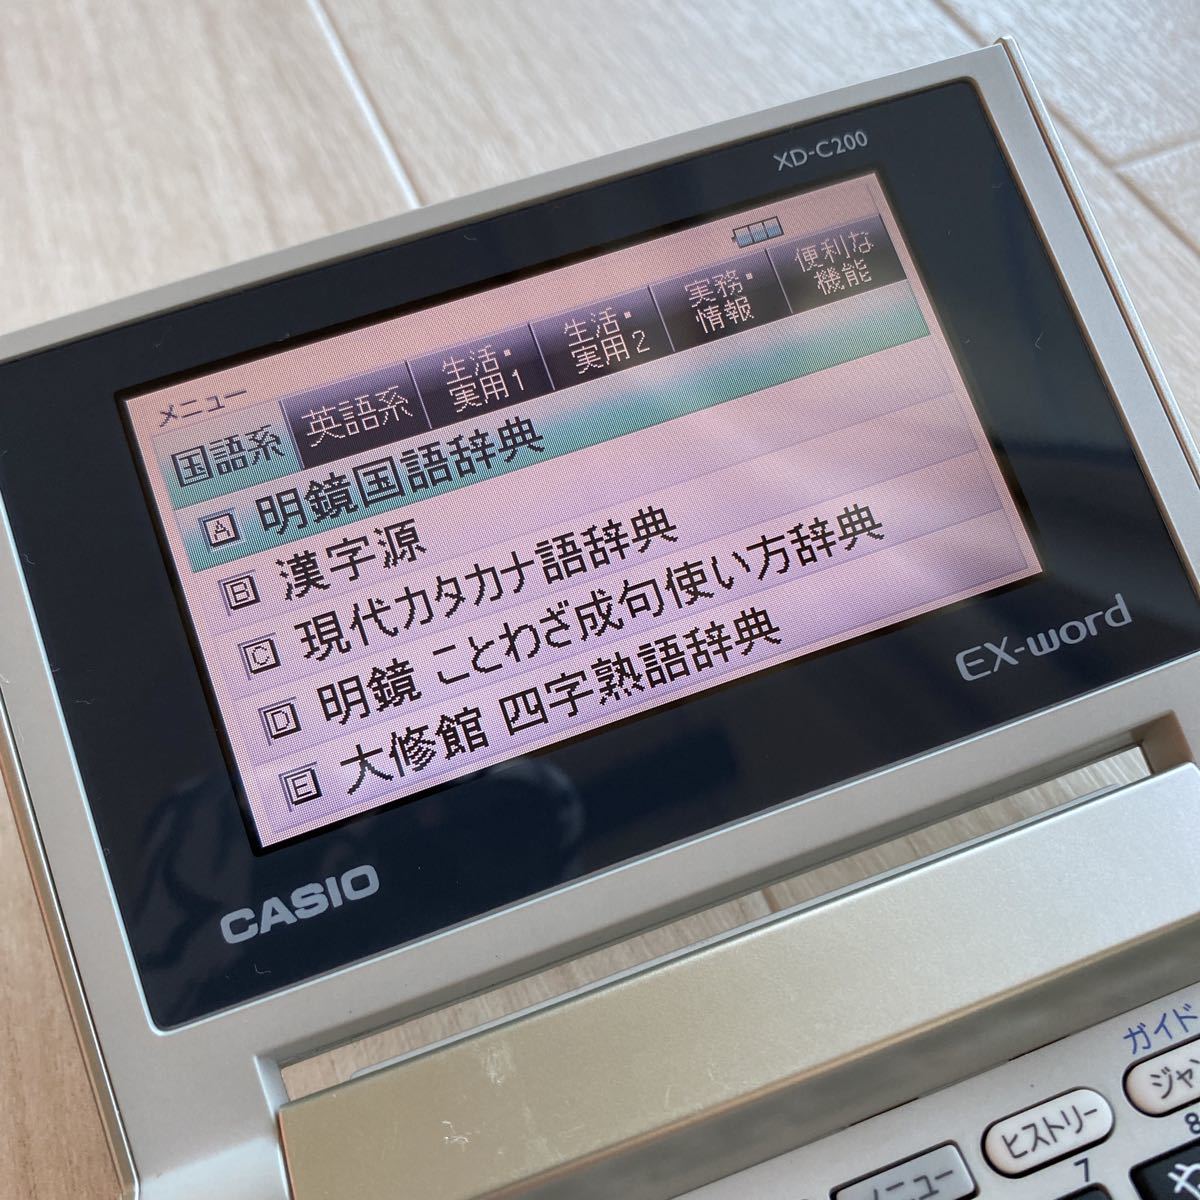 CASIO EX-word XD-C200 カシオ エクスワード カラー電子辞書 単三電池 コンパクトモデル J247